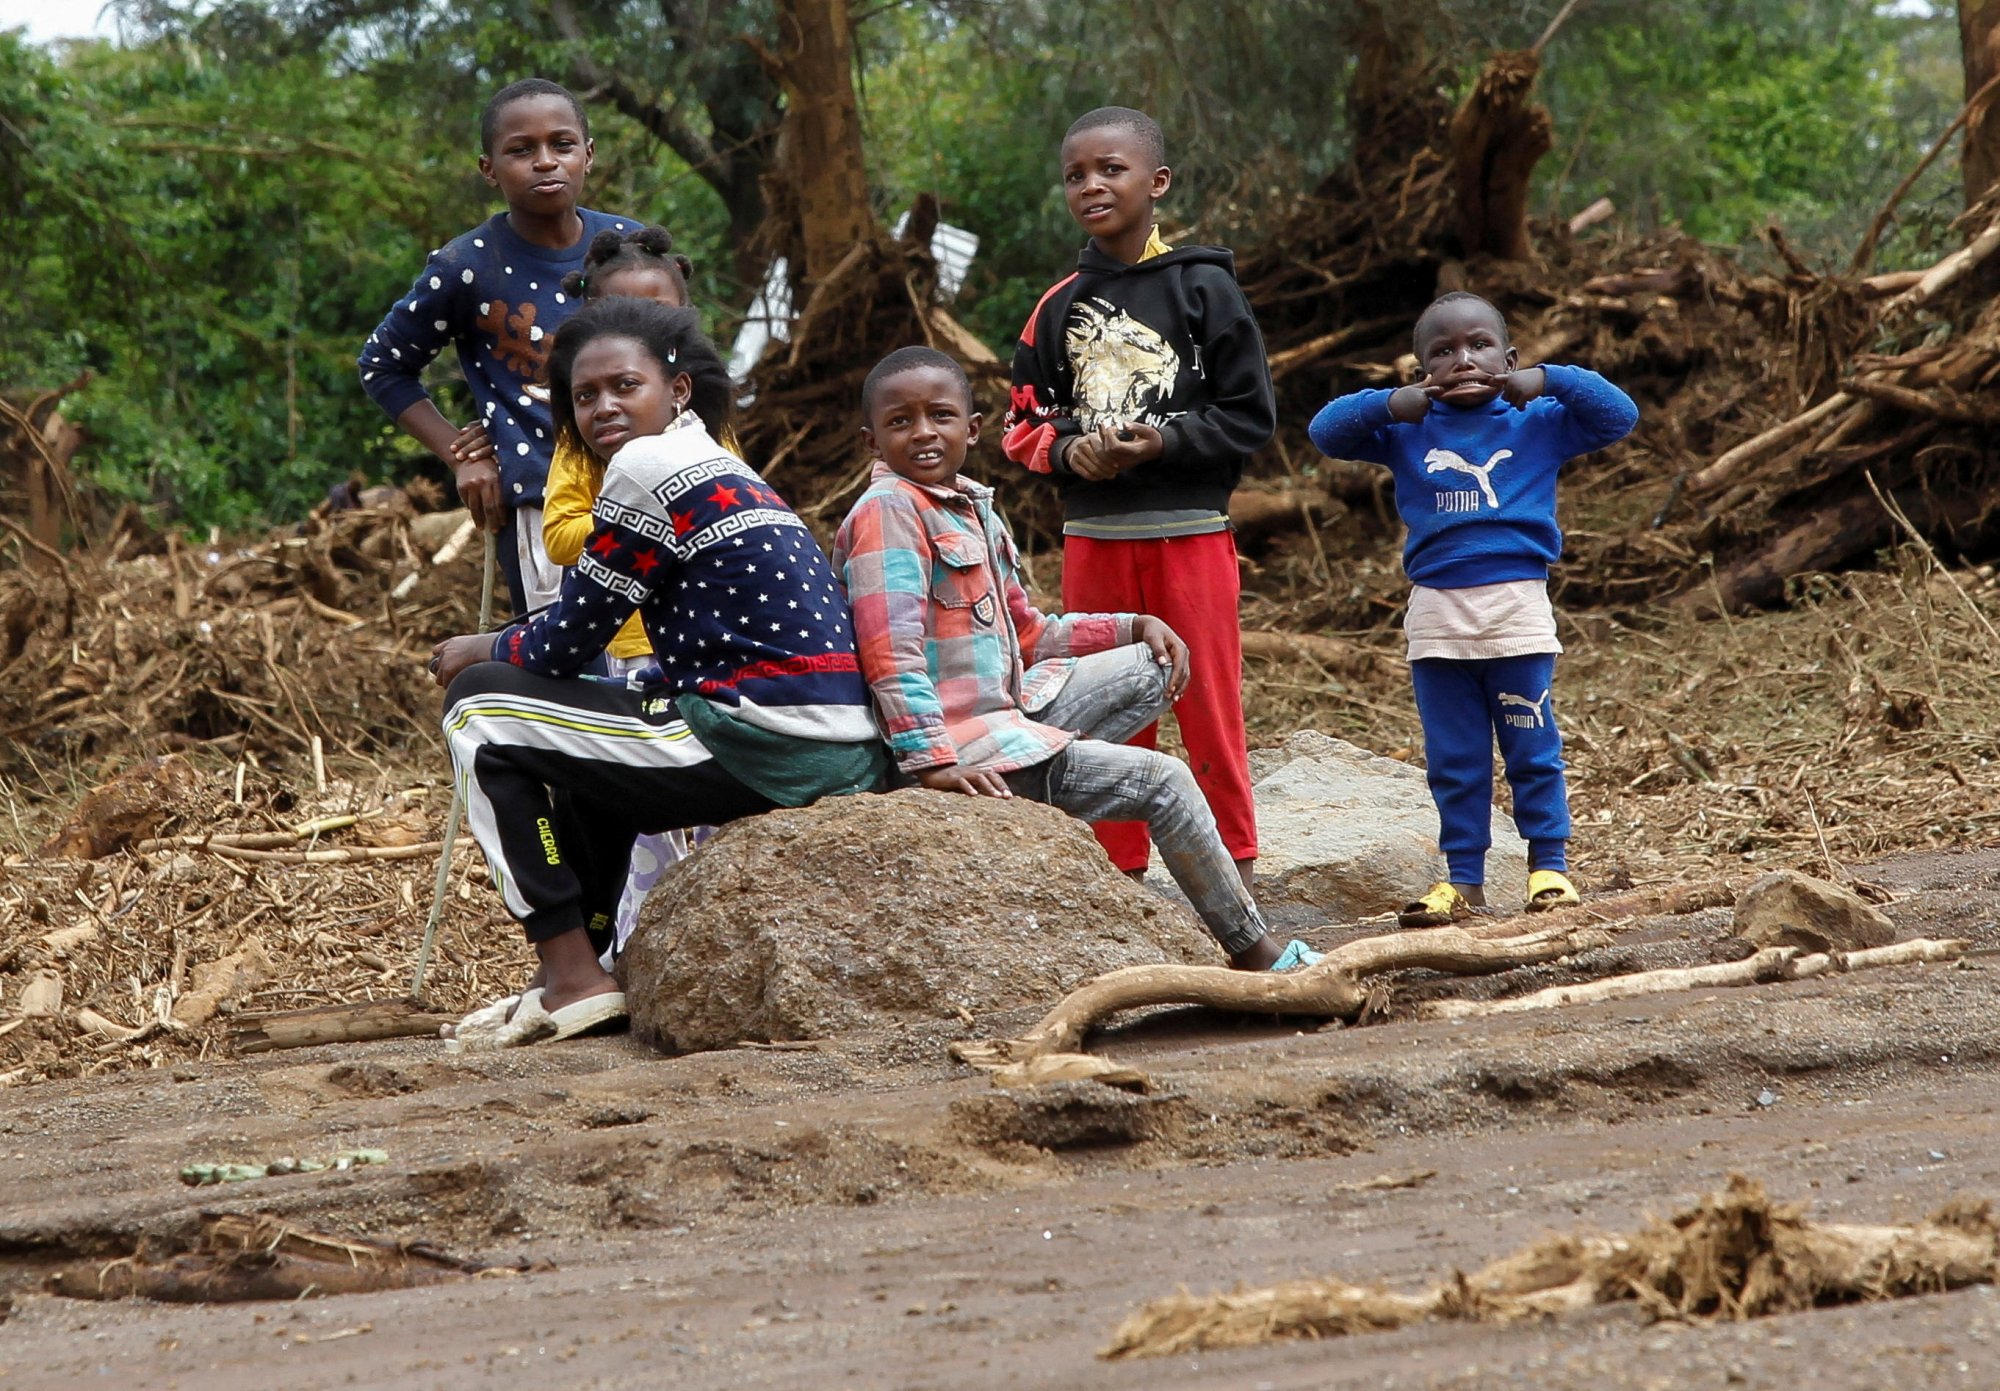 Κένυα: Δεκάδες κρούσματα χολέρας μετά από τις καταστροφικές πλημμύρες